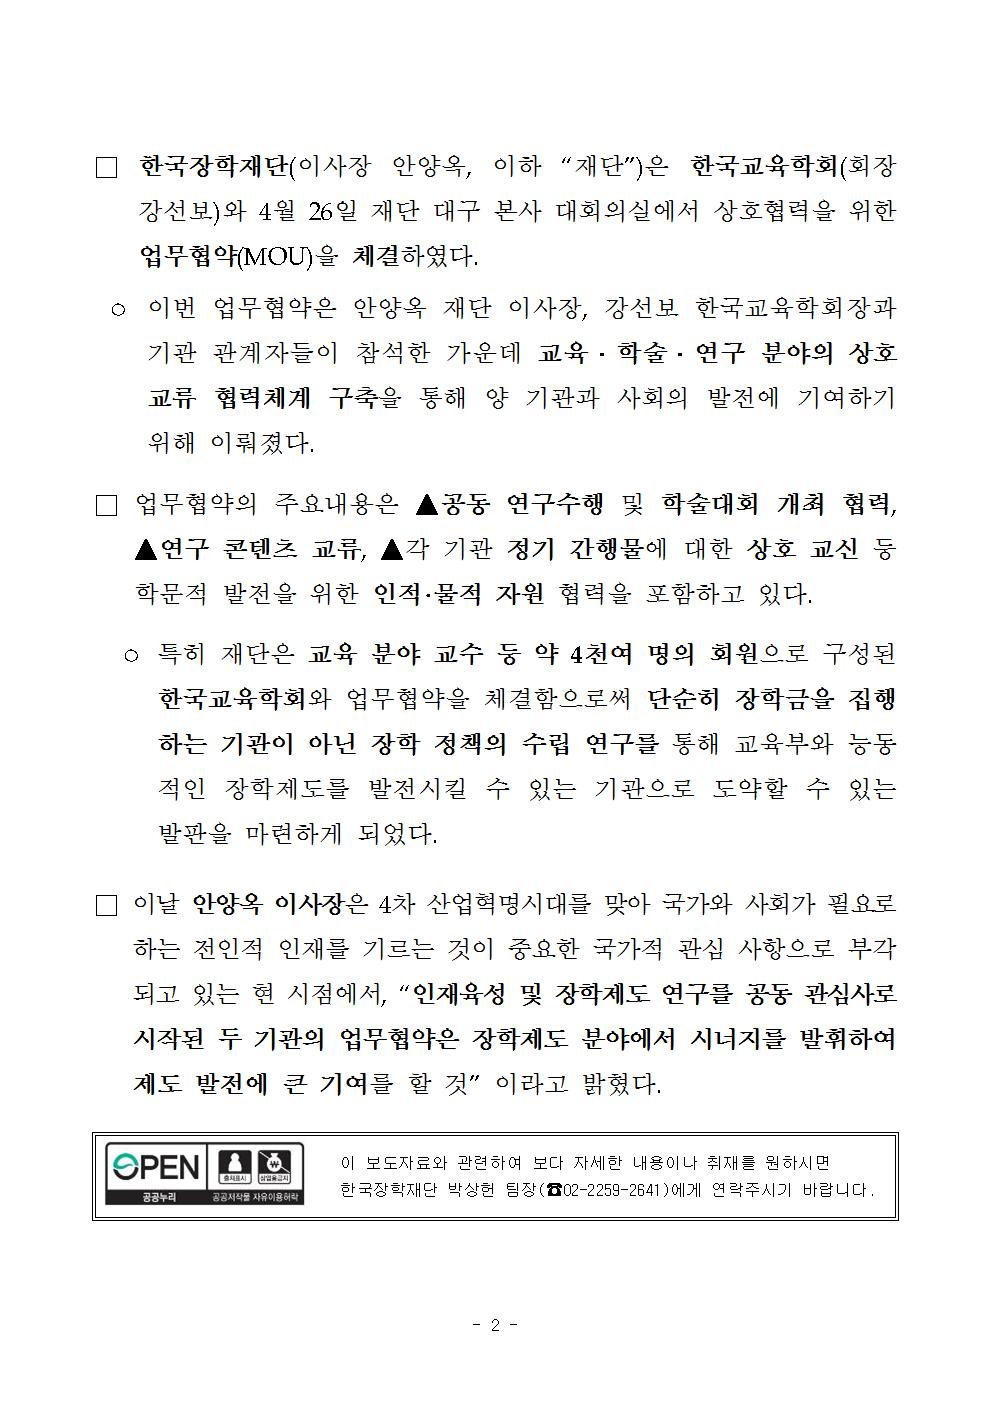 04-26(수)[보도자료]한국장학재단, 한국교육학회와 업무협약 체결002.jpg